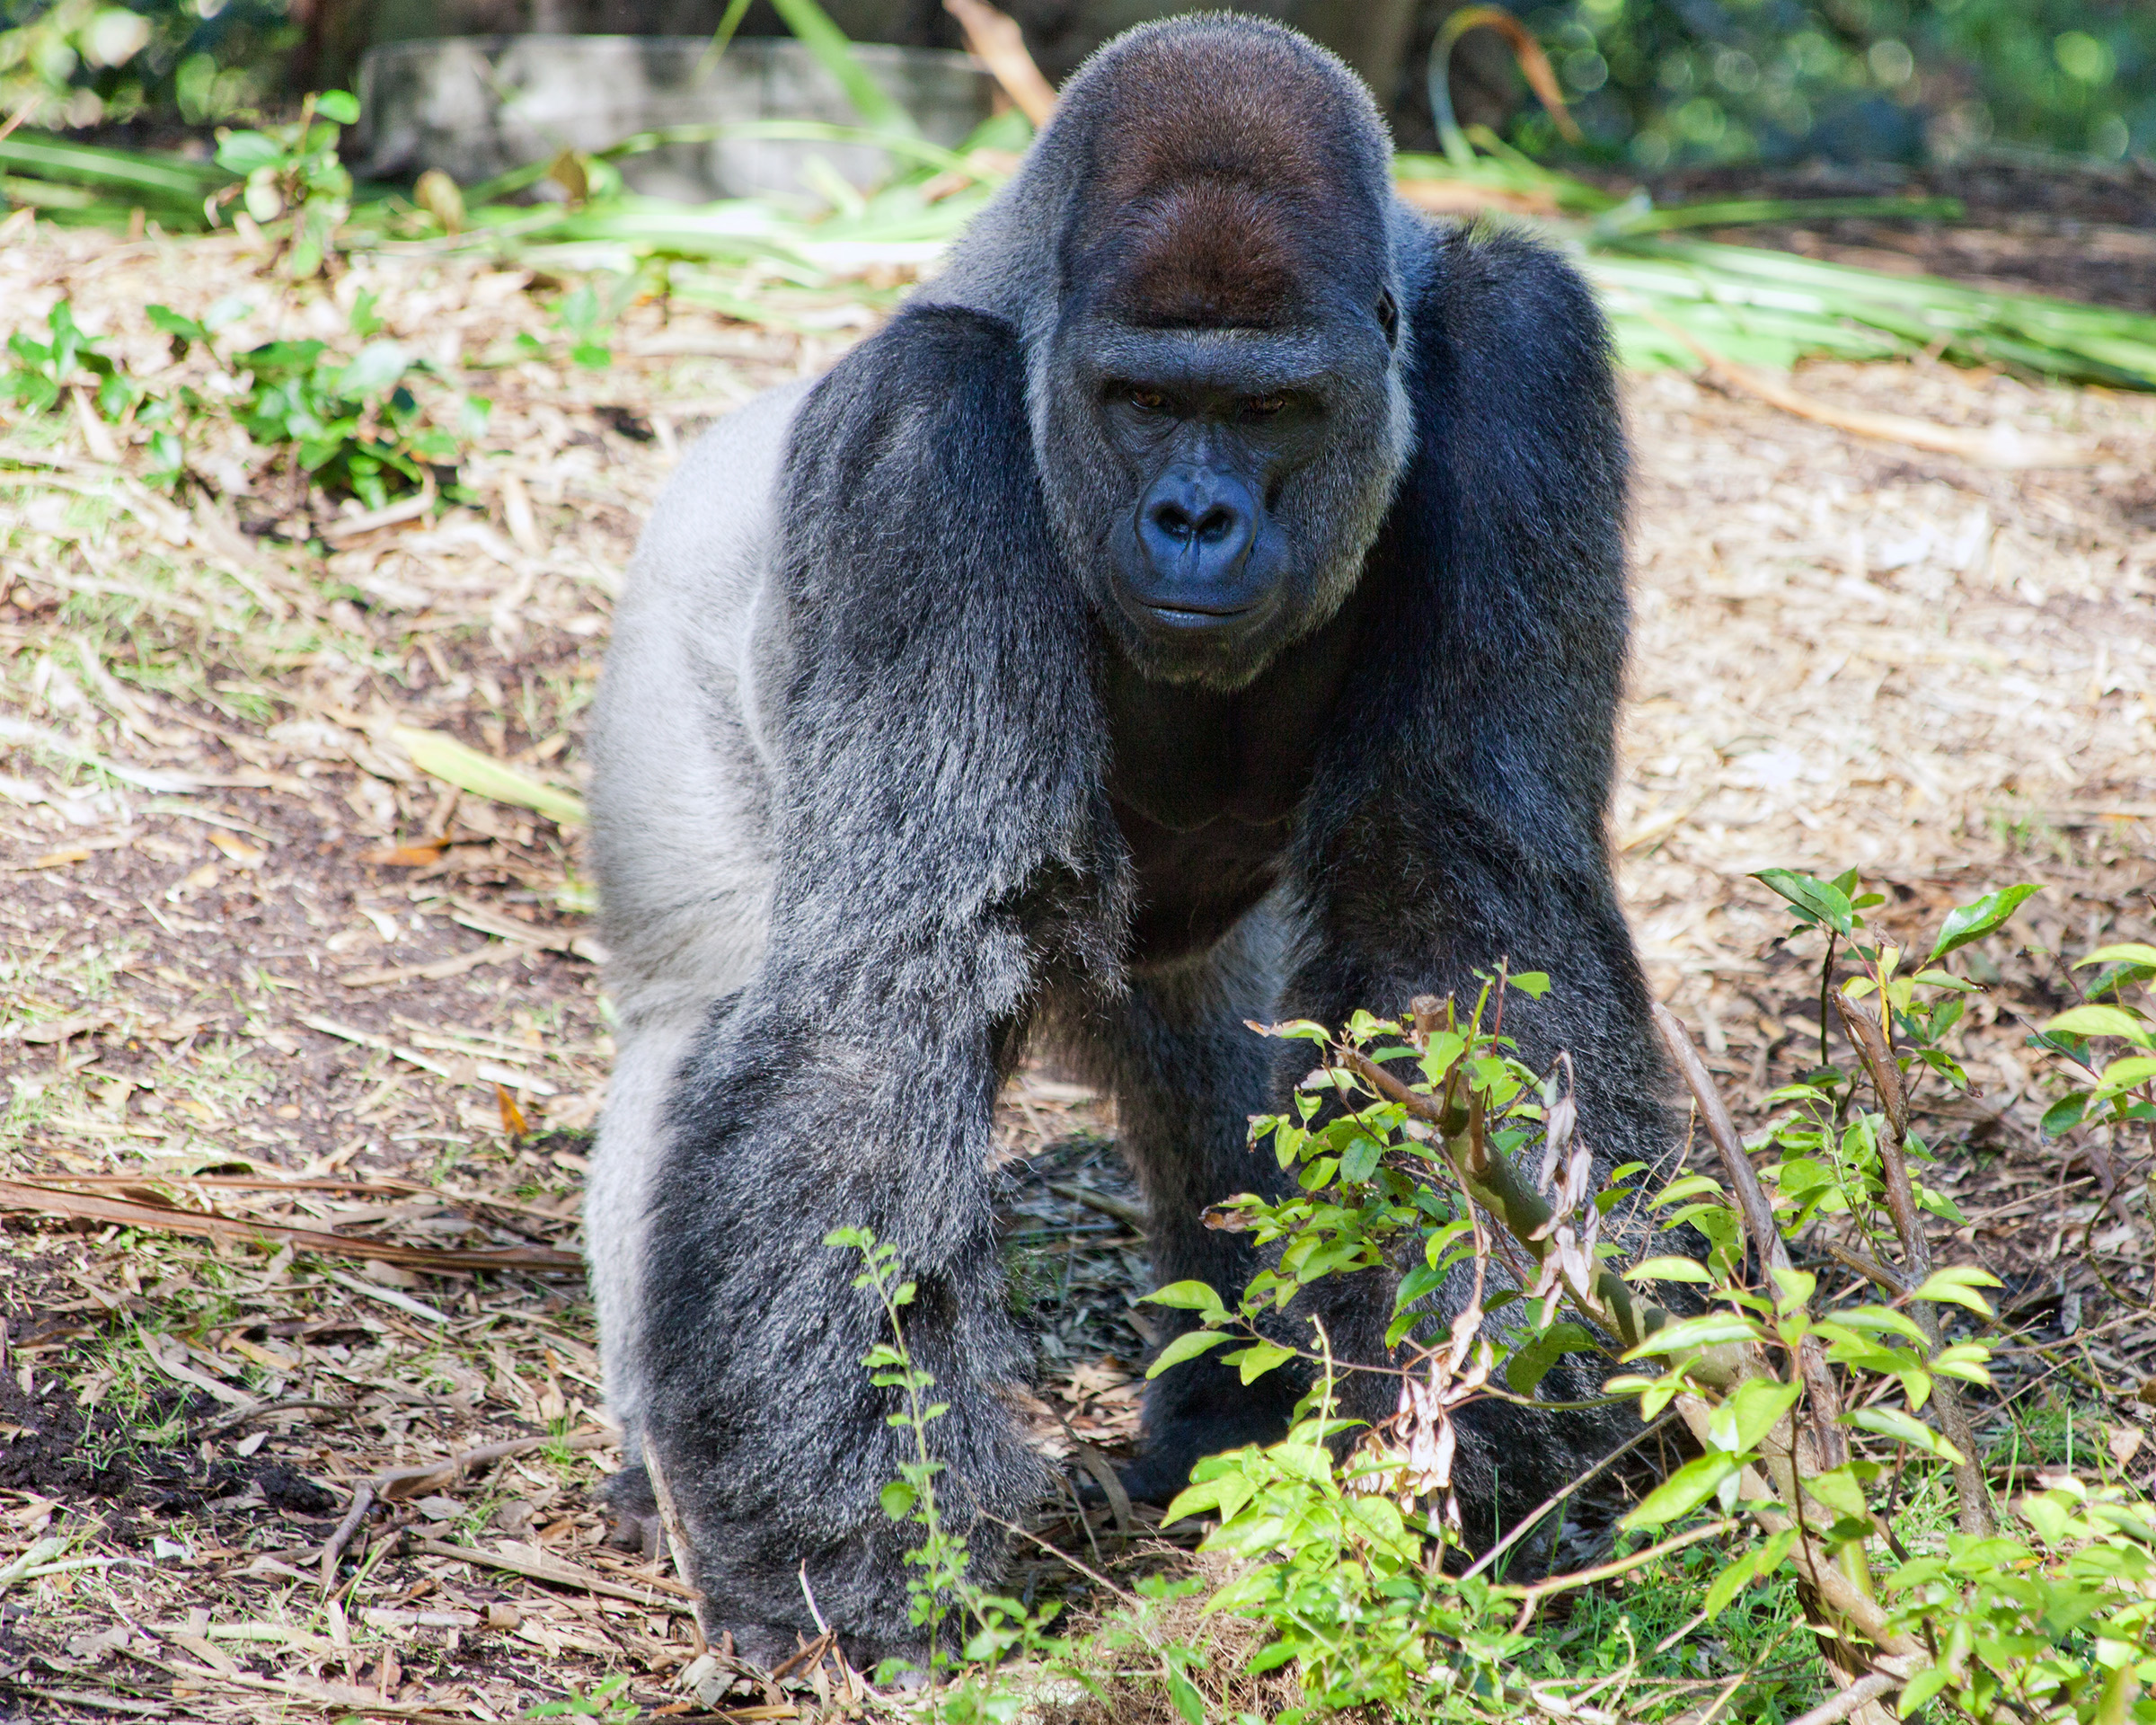 Обогащение окружающей среды для трех видов человекообразных обезьян в зоопарке Крефельда – исследование по занятости животных с помощью учрежденных методов